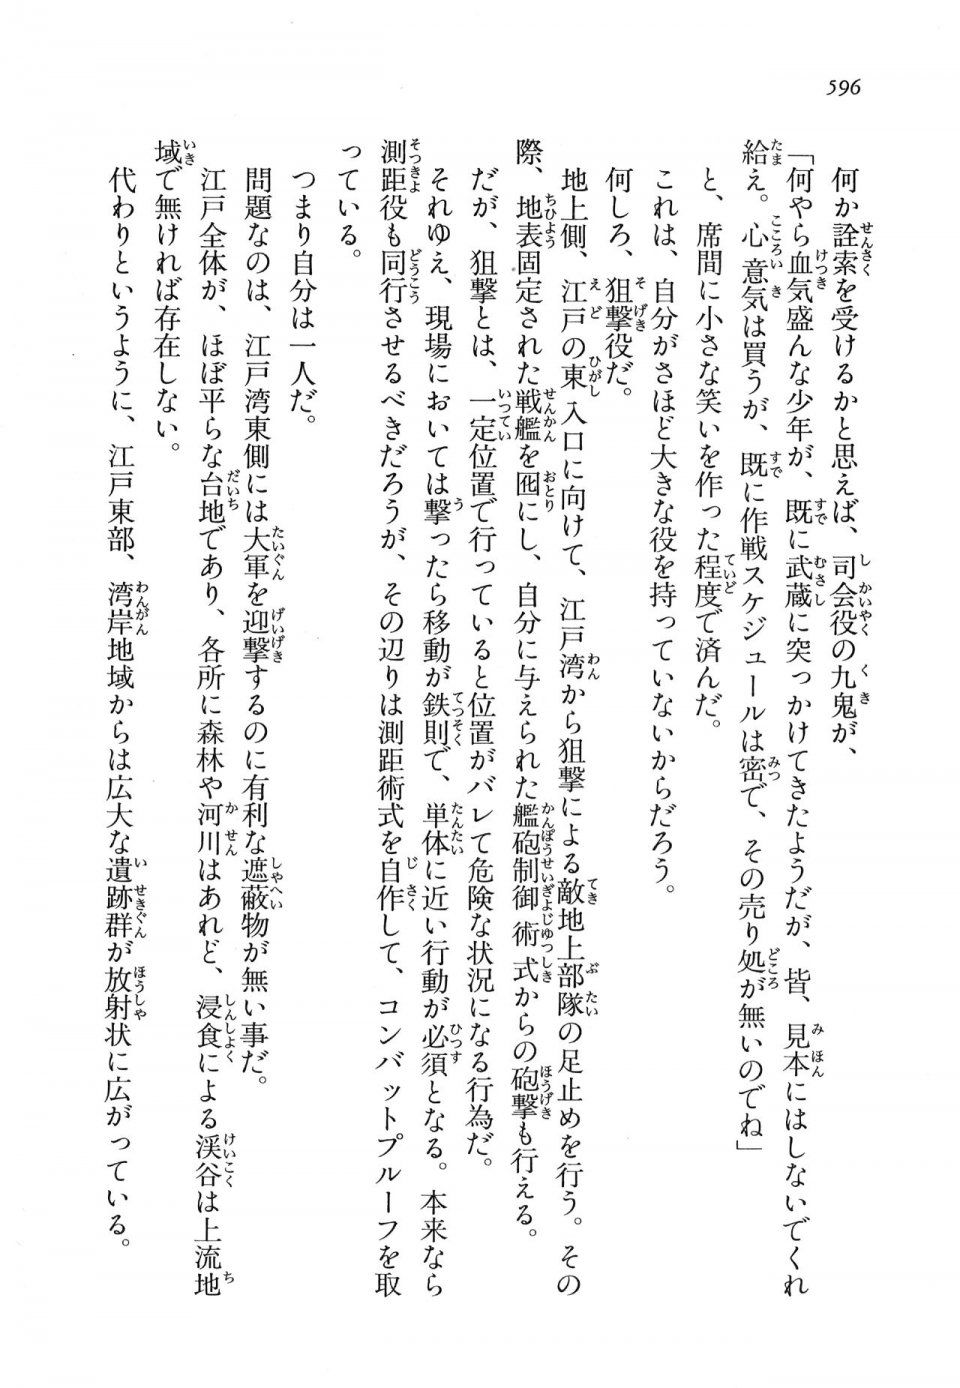 Kyoukai Senjou no Horizon LN Vol 16(7A) - Photo #596